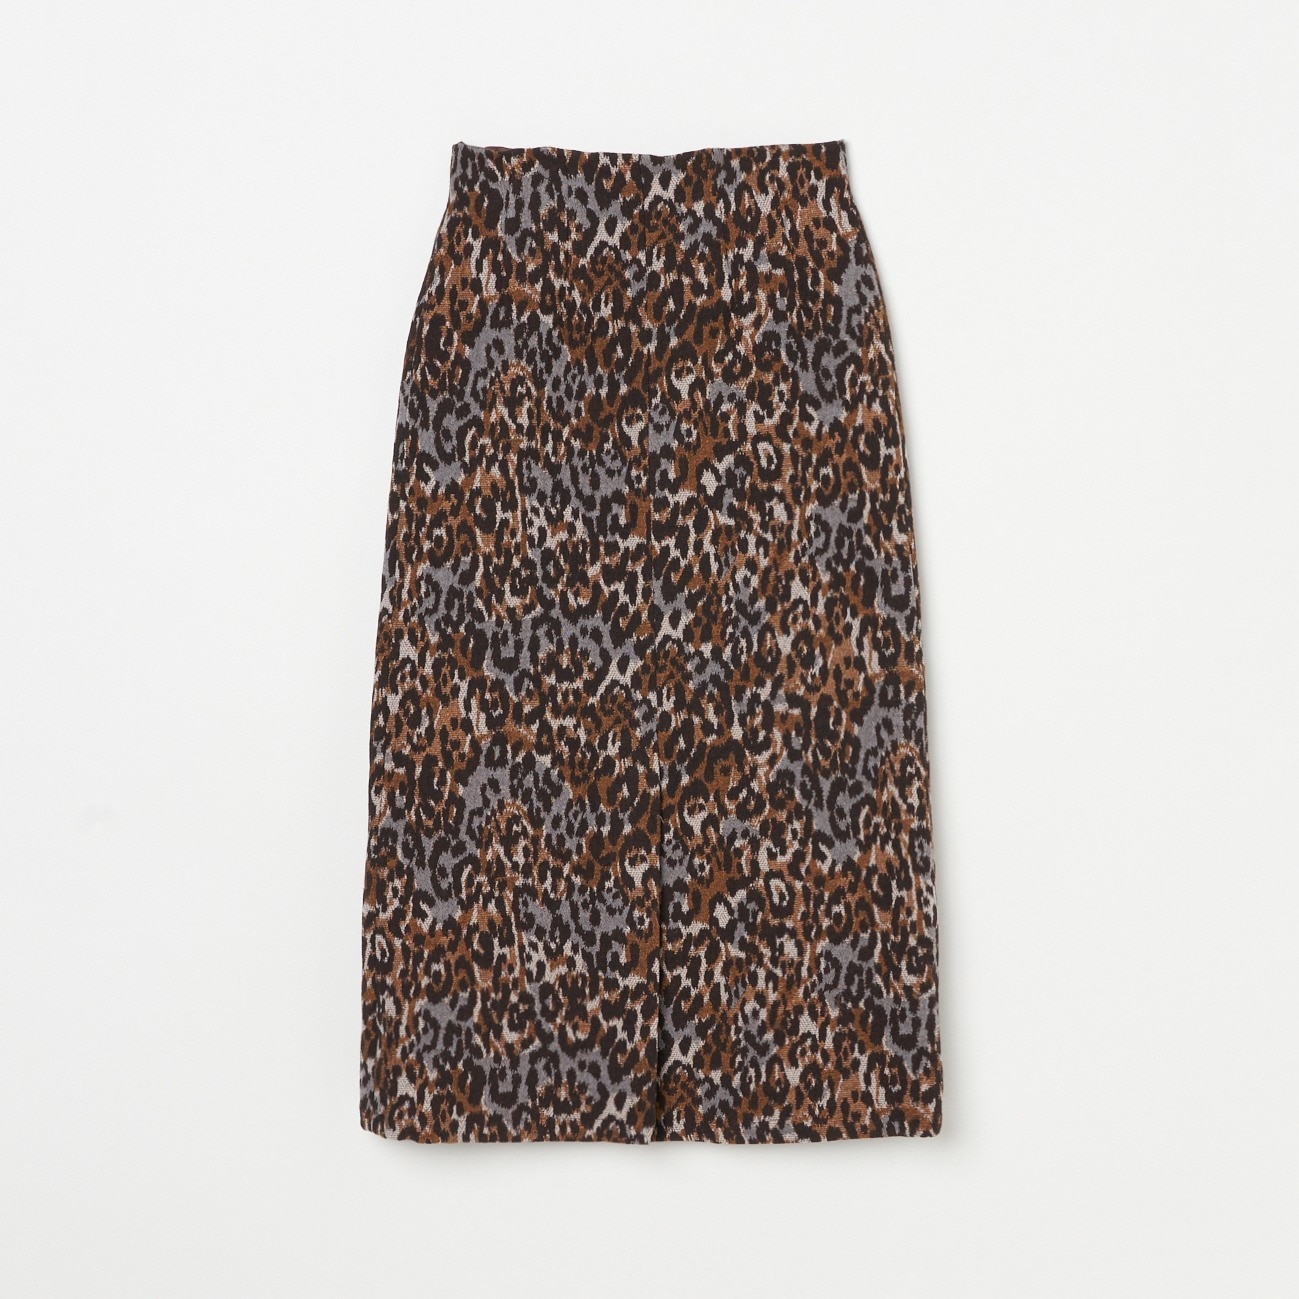 7,560円エリオポールグリッタースカート36サイズ